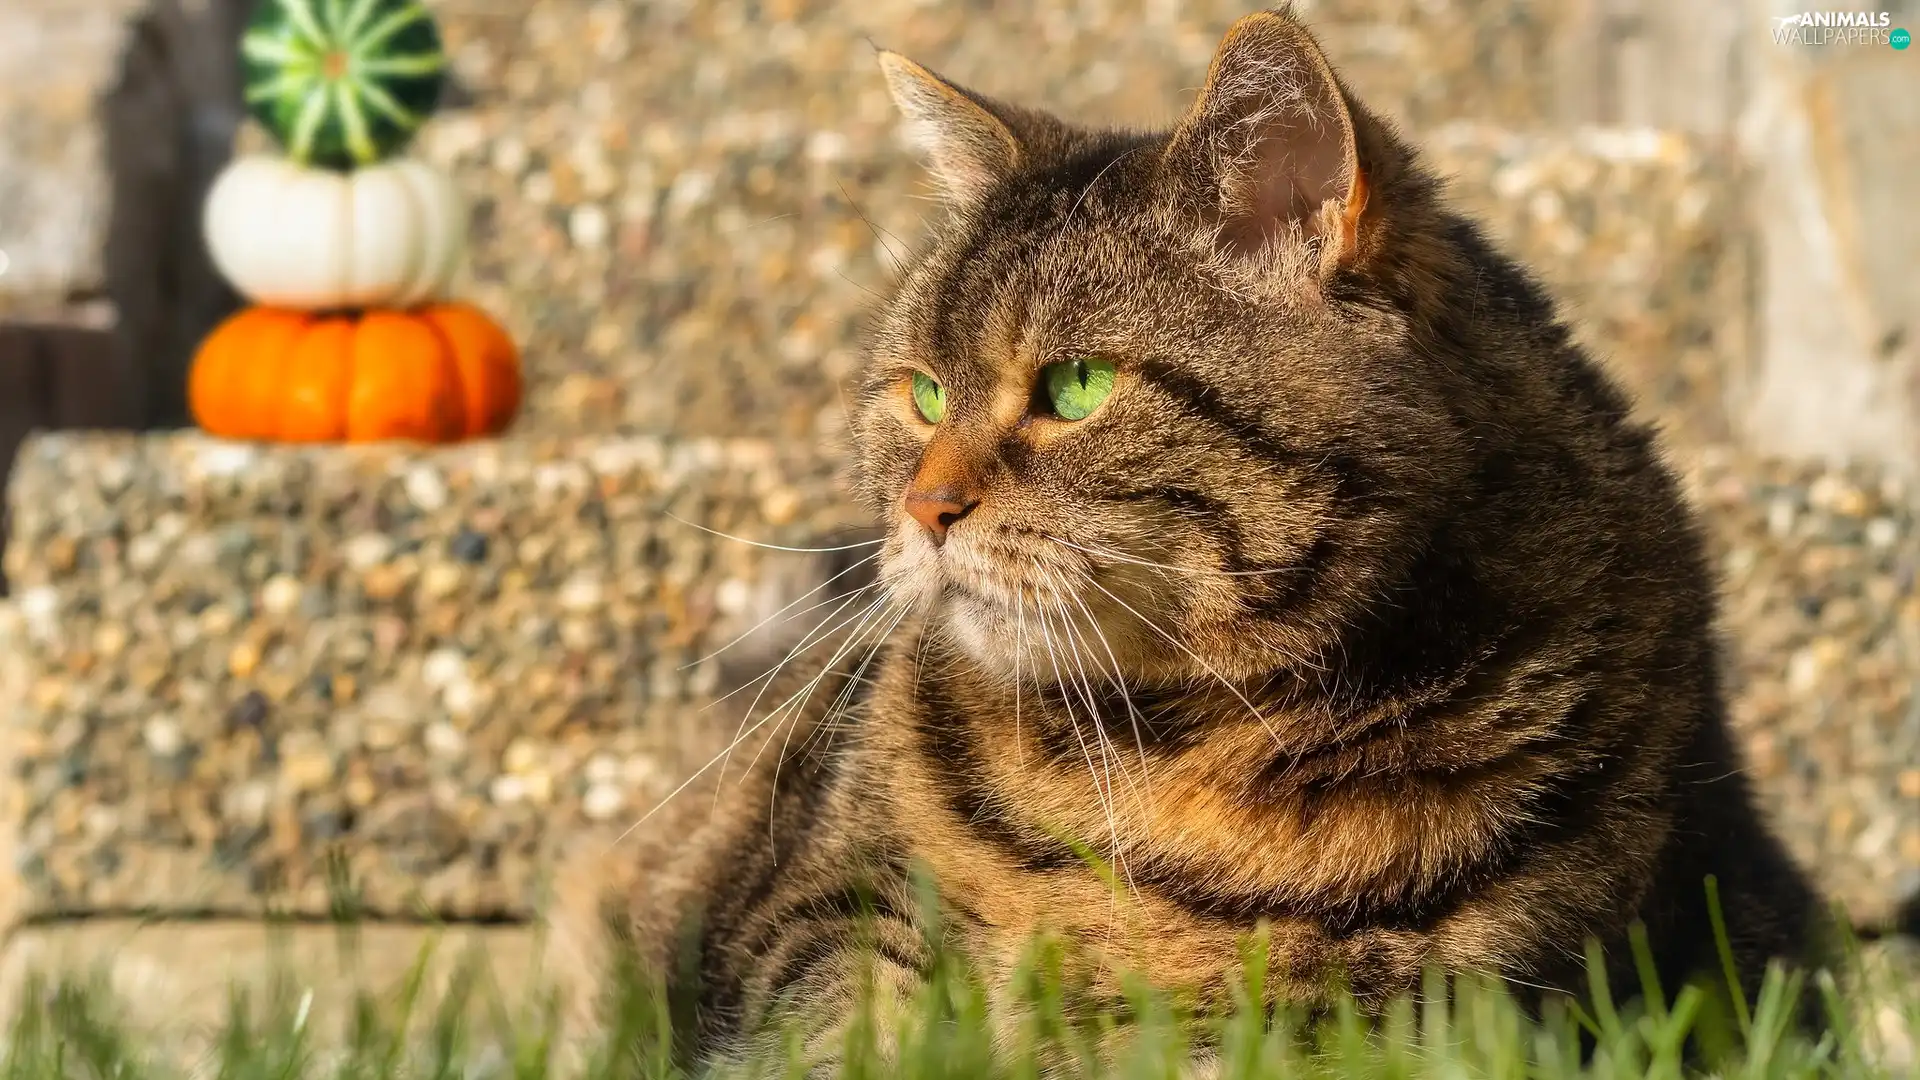 cat, Green-eyed, ledge, pumpkin, grass, dun